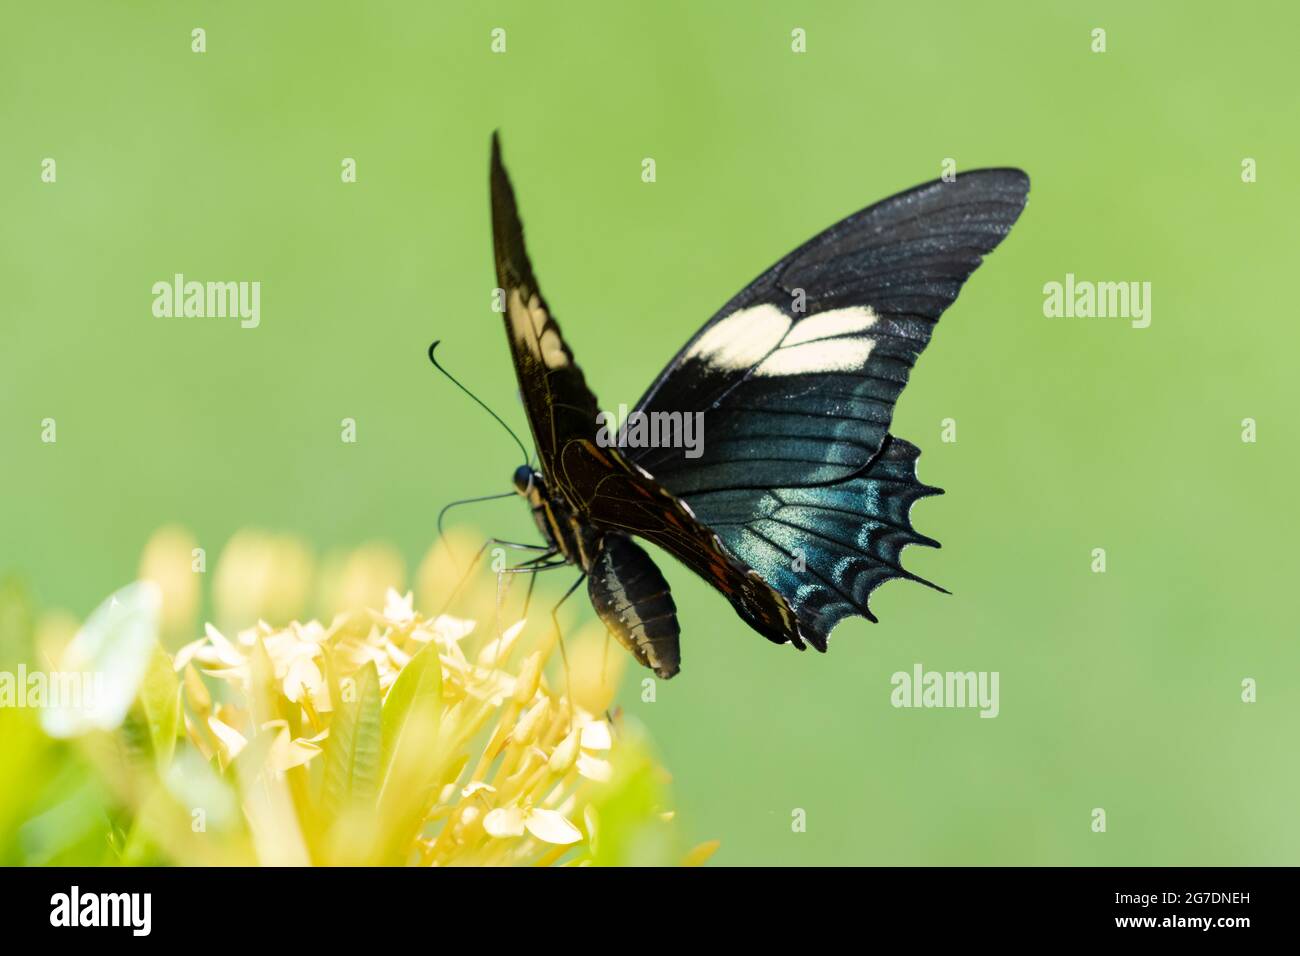 Una farfalla colorata su una siepe di Ixora con uno sfondo verde liscio. Farfalla tropicale e fiori gialli luminosi. Foto Stock